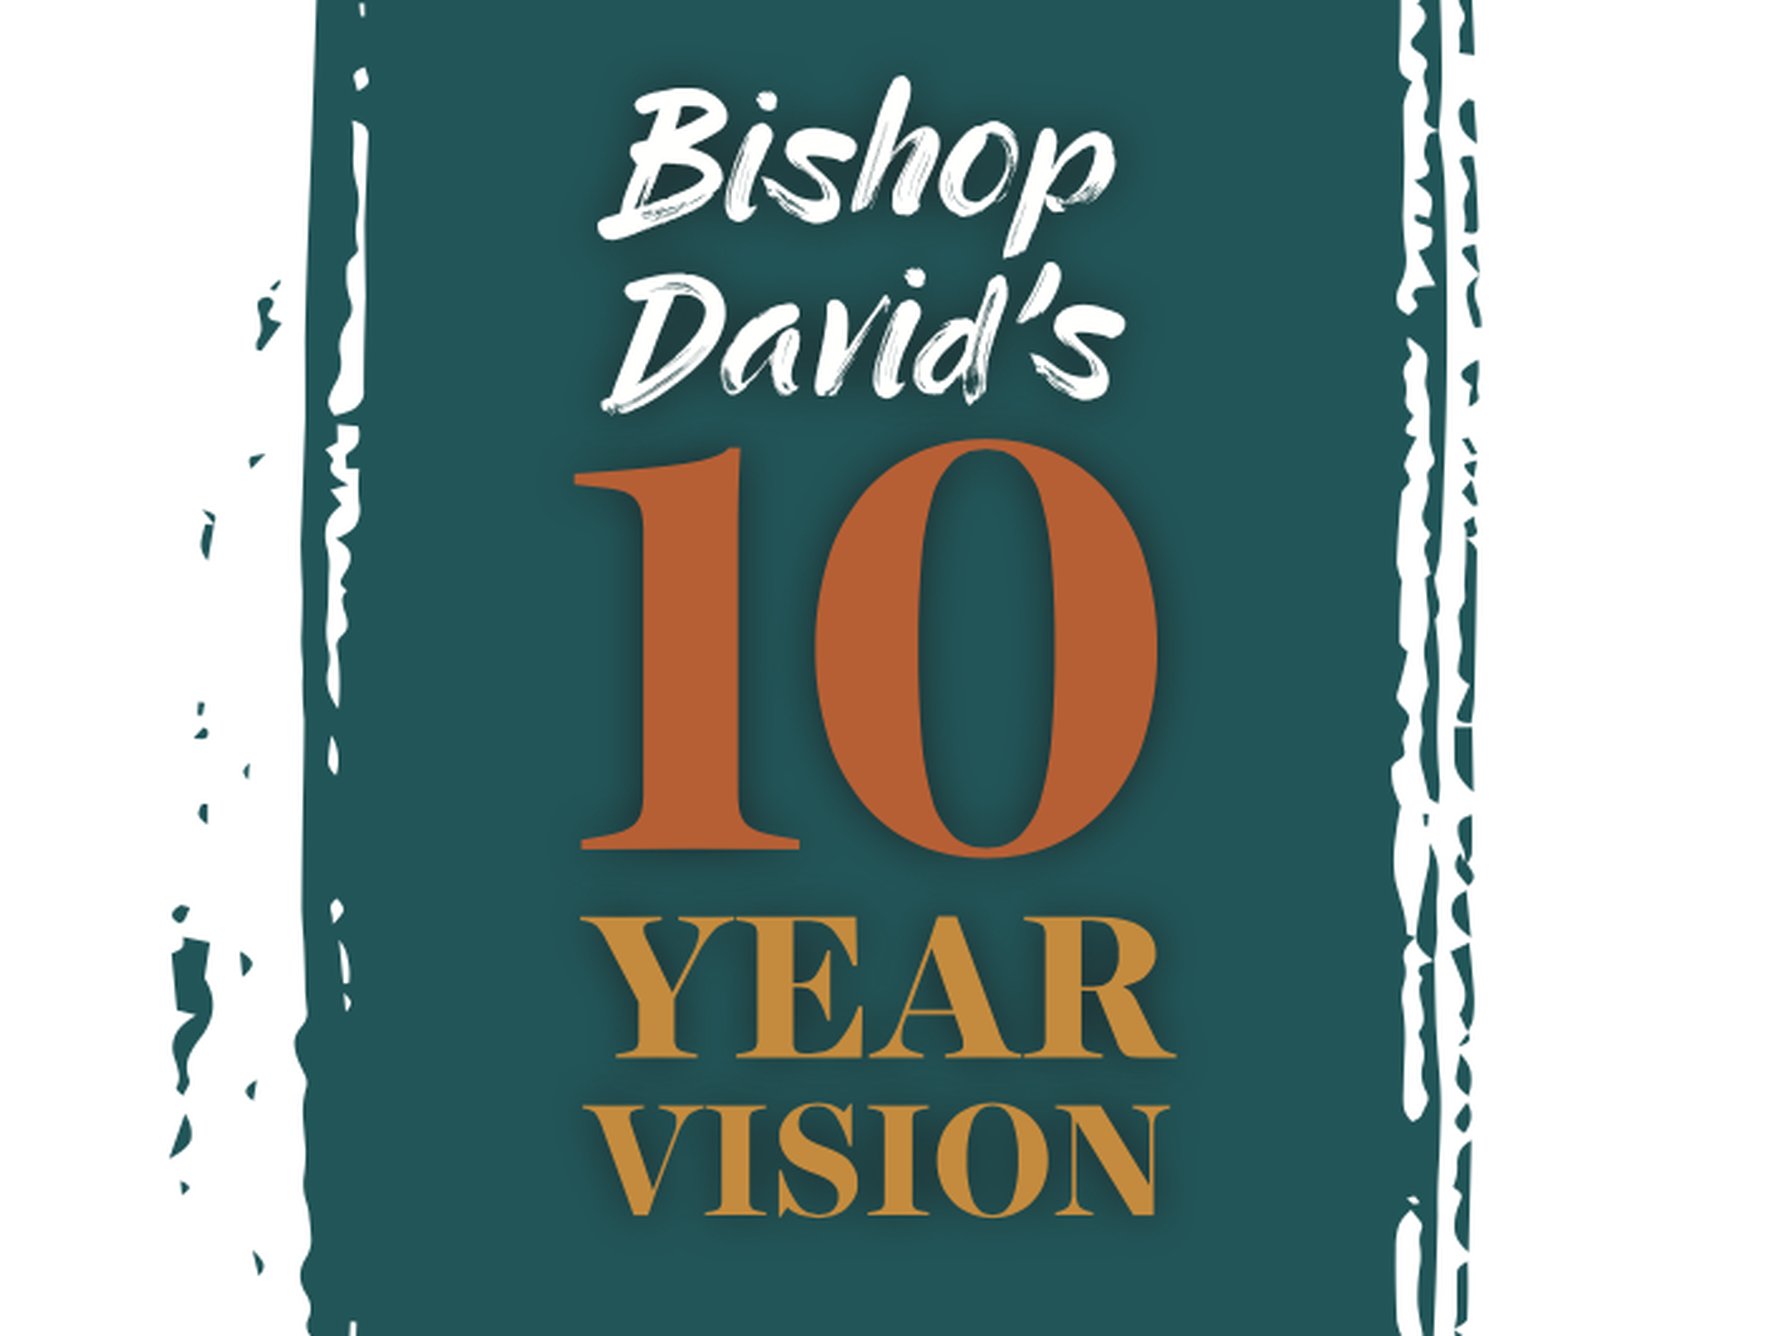 Bishop David's 10 Year Vision